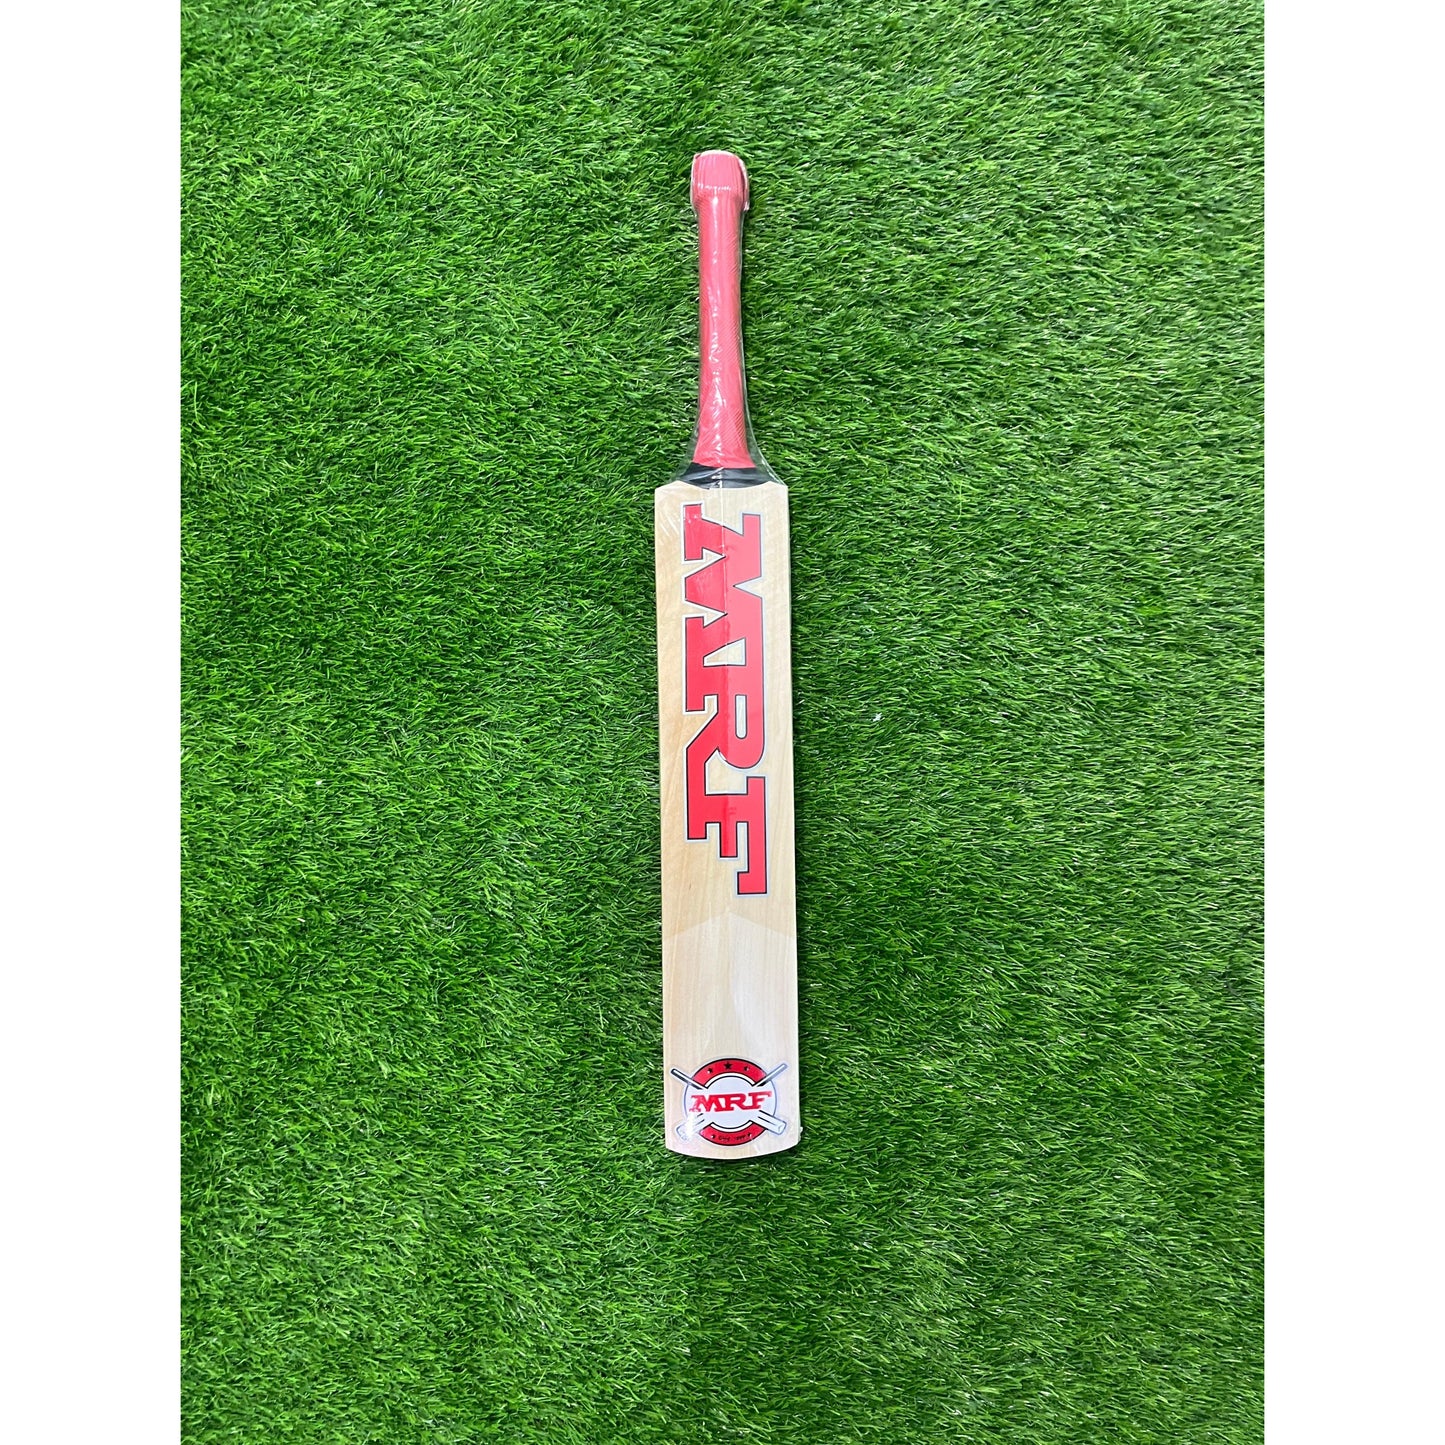 MRF KW CHAMP Kashmir Willow Cricket Bat - Junior Size 2 (Two)